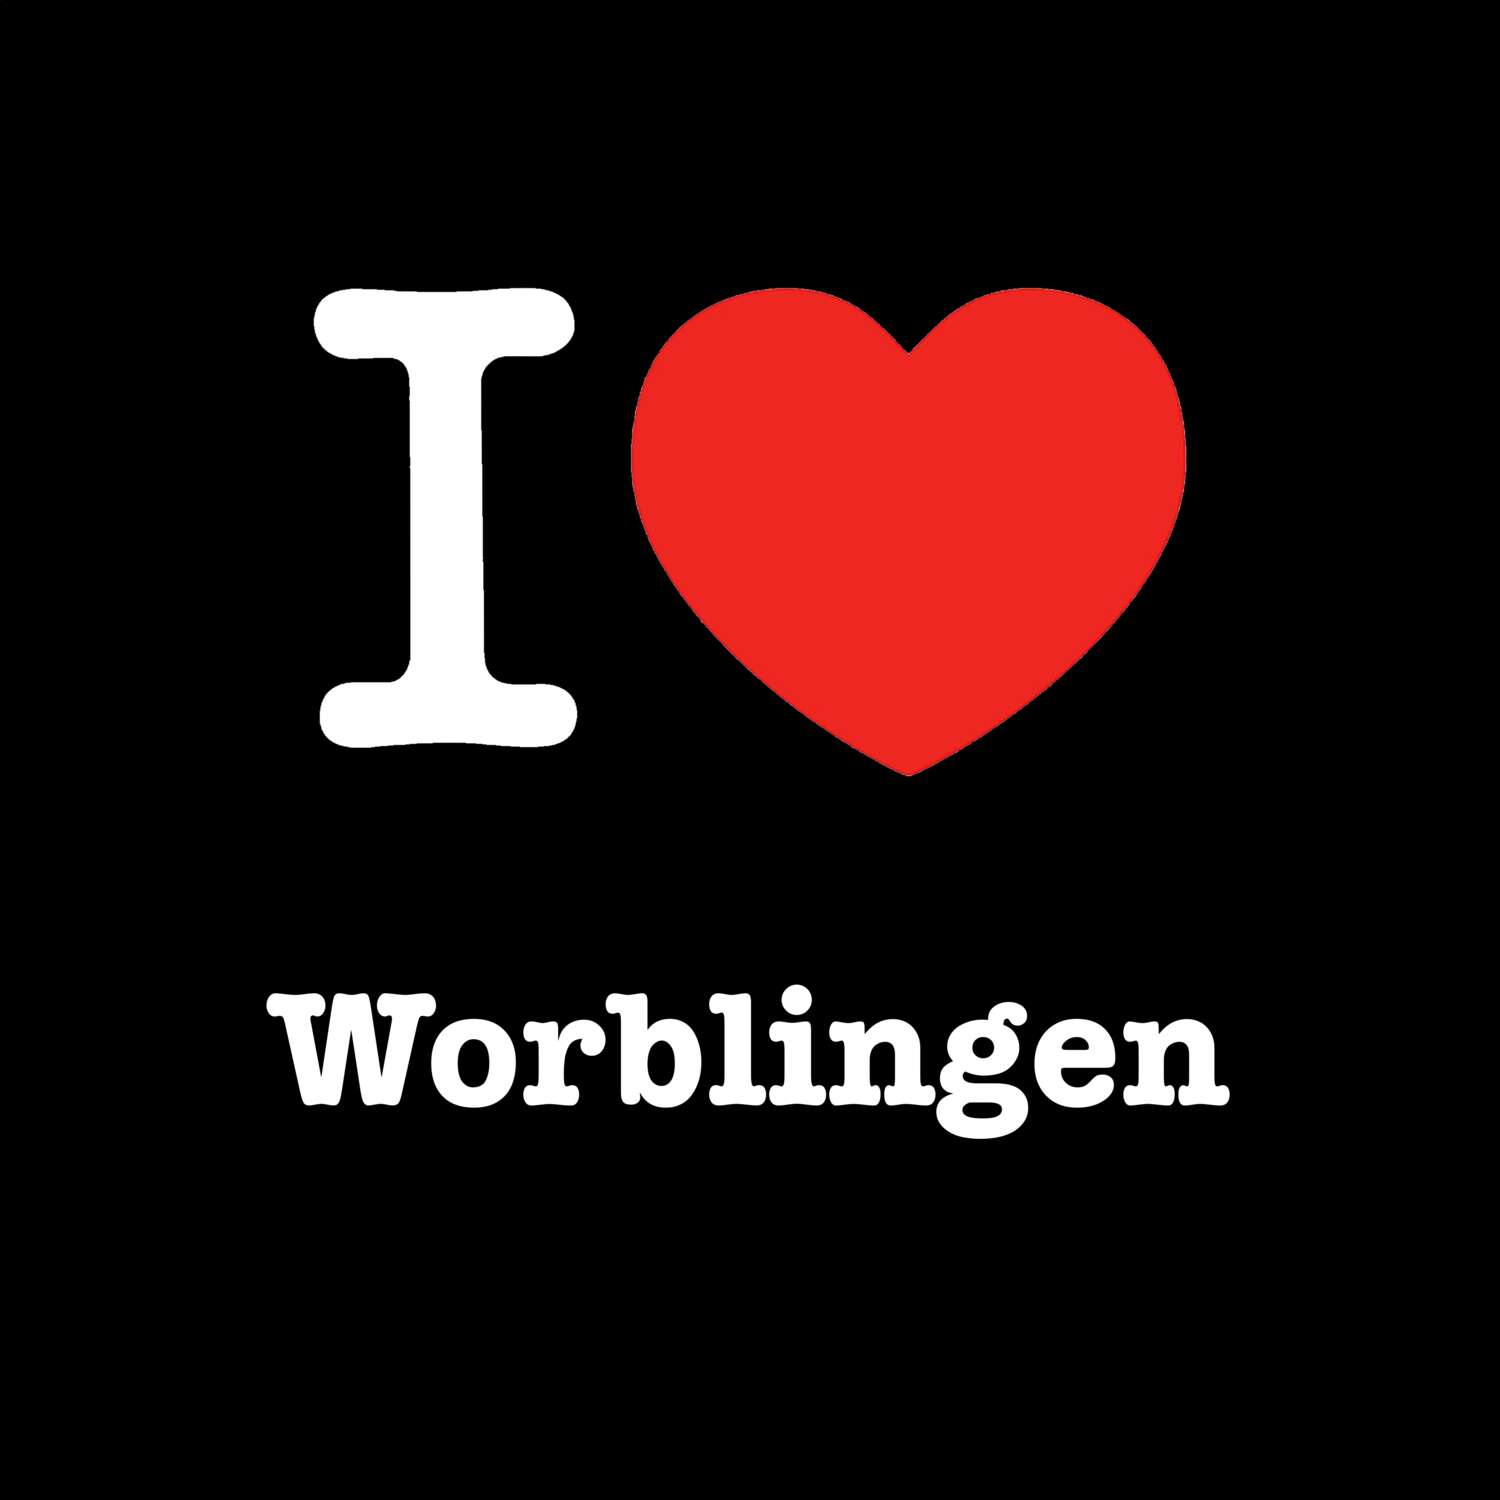 Worblingen T-Shirt »I love«